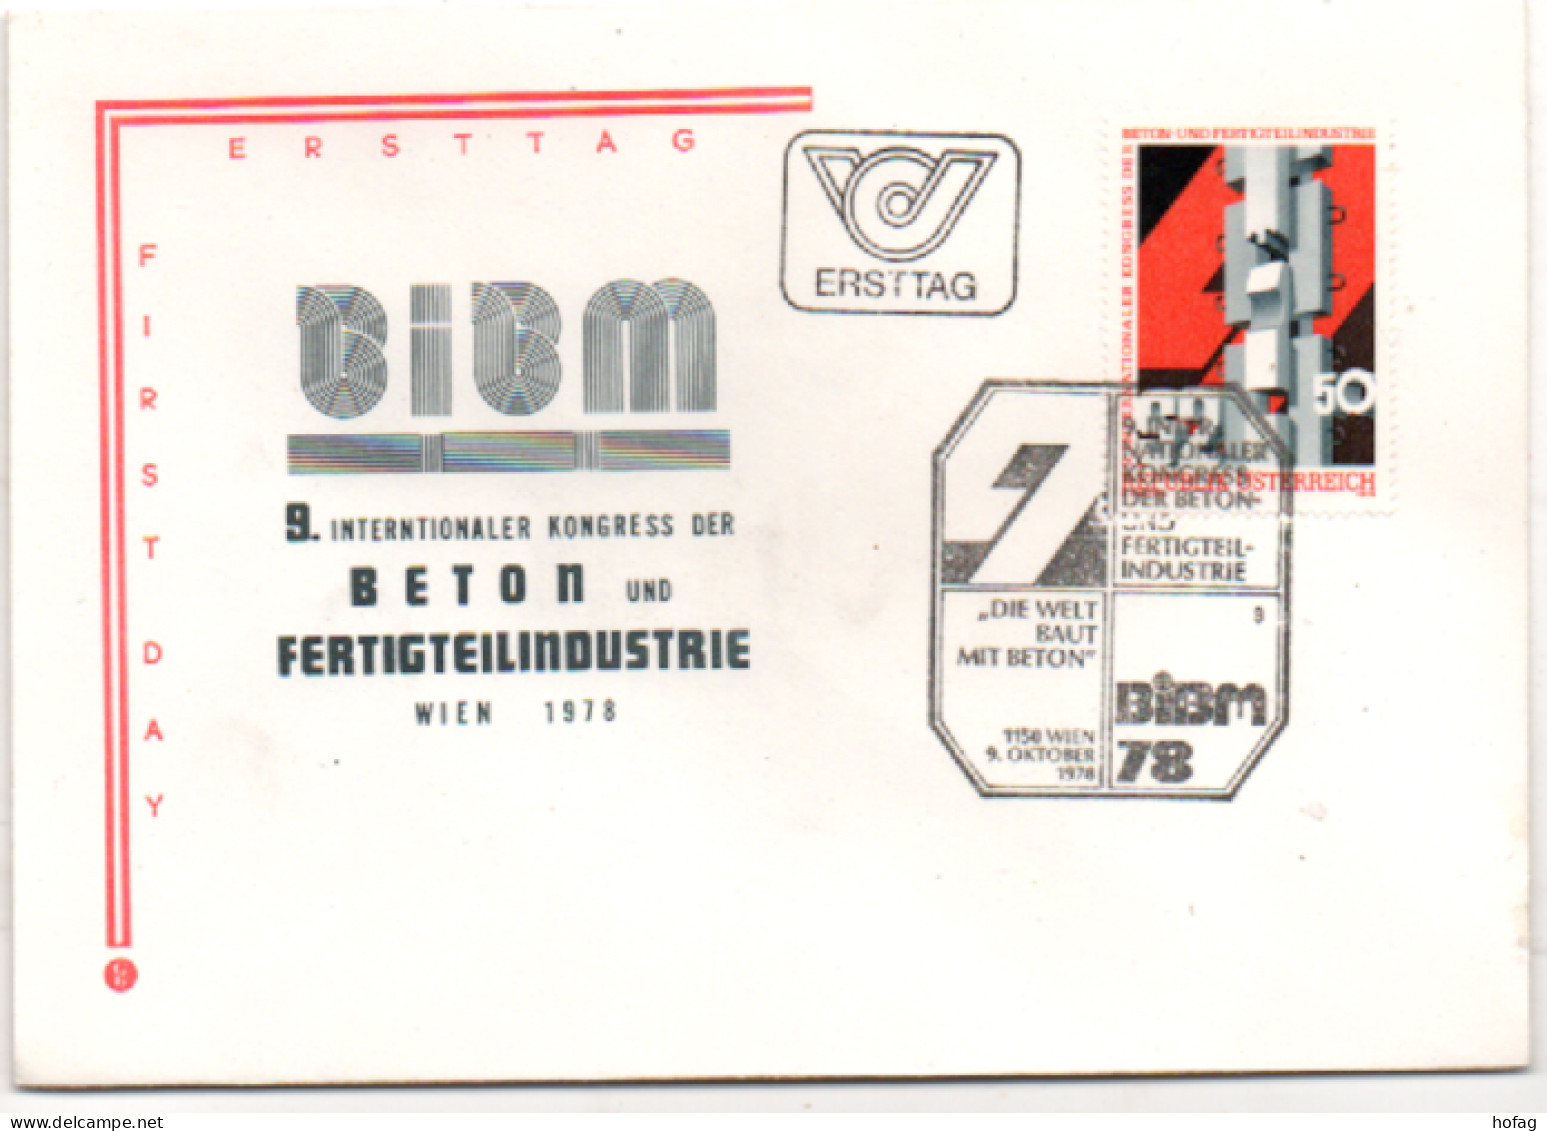 Österreich 1977 MiNr.: 1586 BIBM Ersttag; FDC Austria FDC Scott: 1091 YT: 1414 Sg: 1818 - FDC